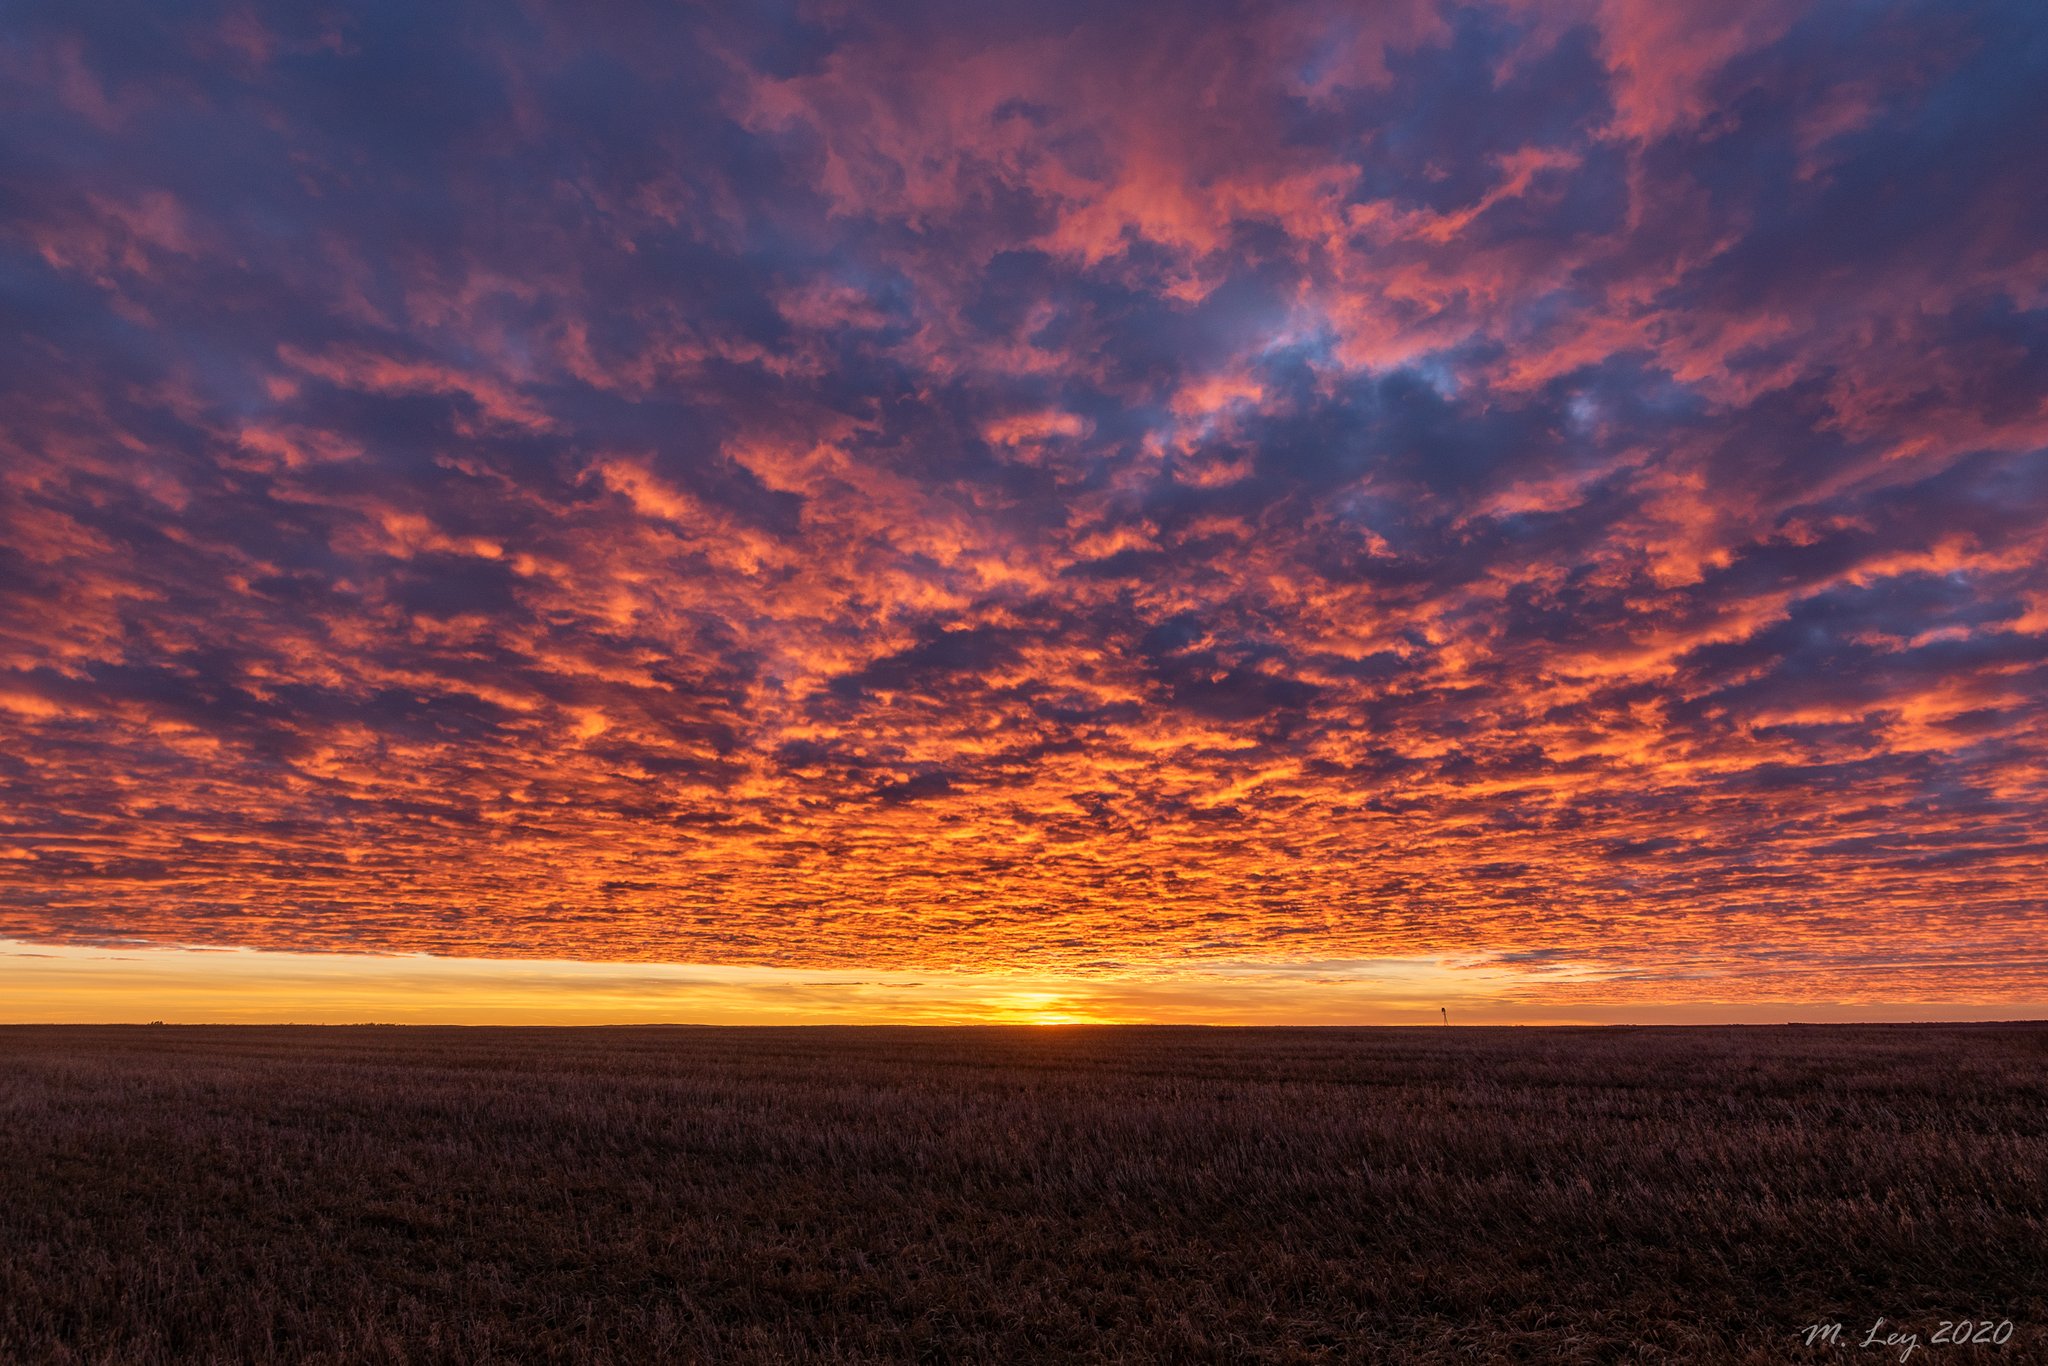 2nd Place "Amber Waves of Grain" Late December South Dakota sunset by Matt @Matt_wyo